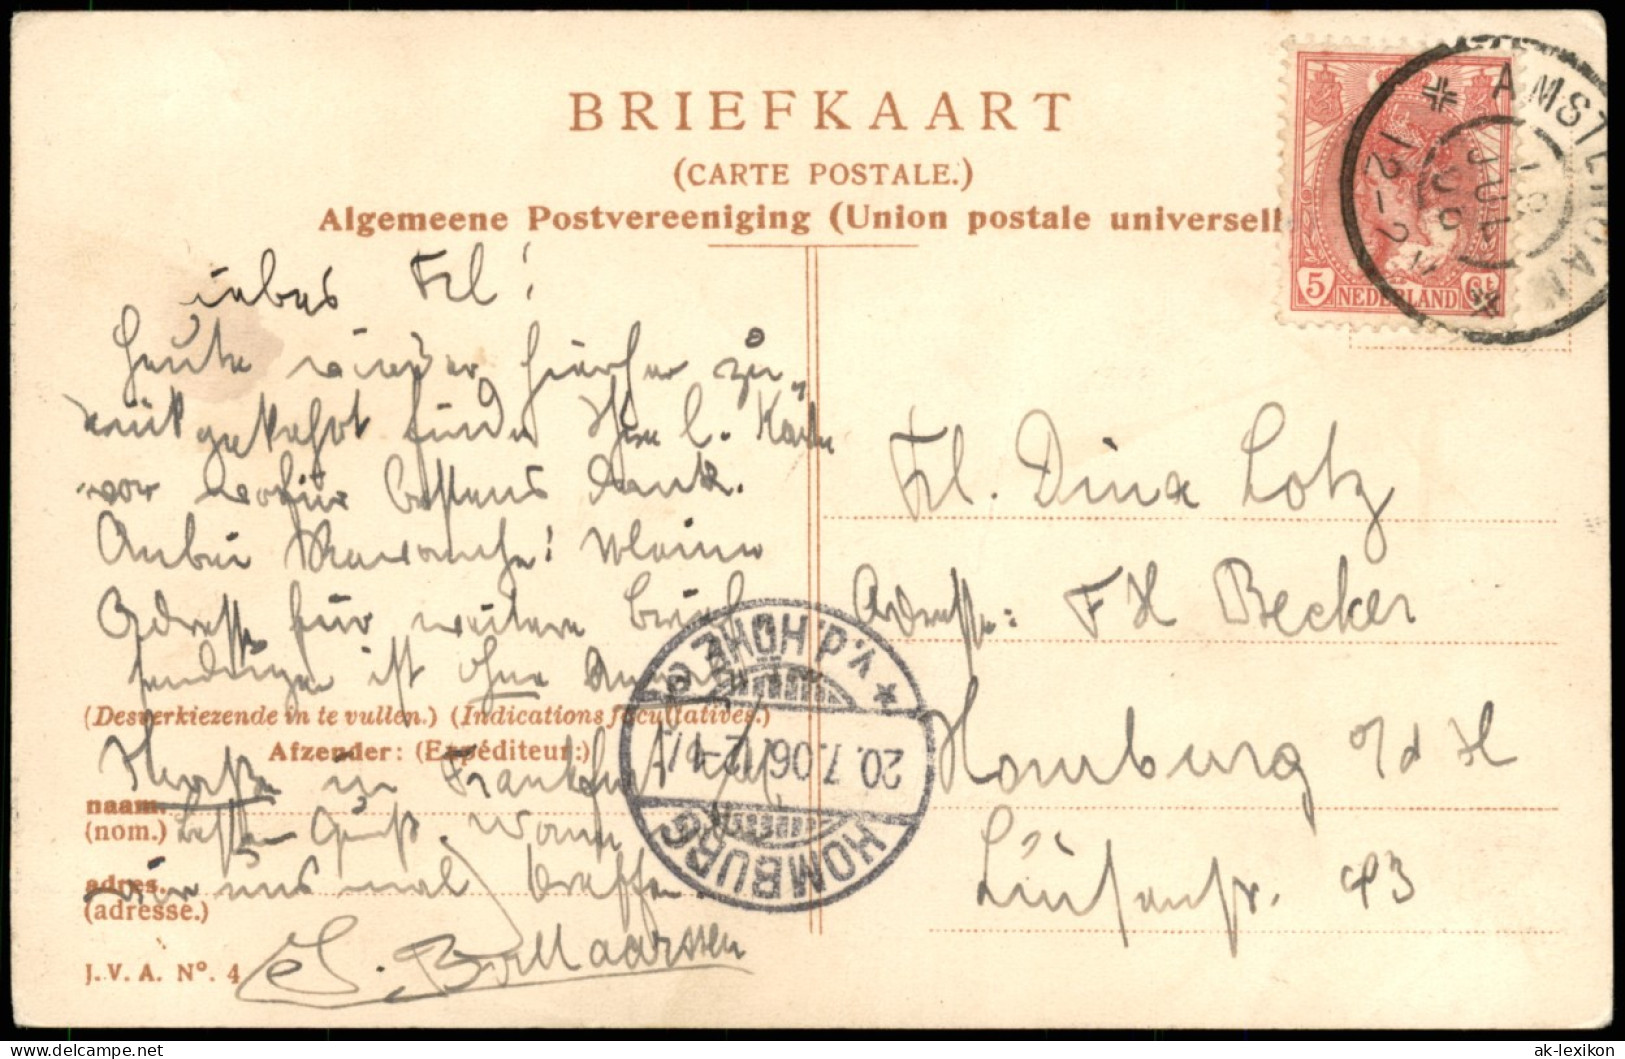 Postkaart Amsterdam Amsterdam Stadtteilansicht, Oudeschans 1906 - Amsterdam